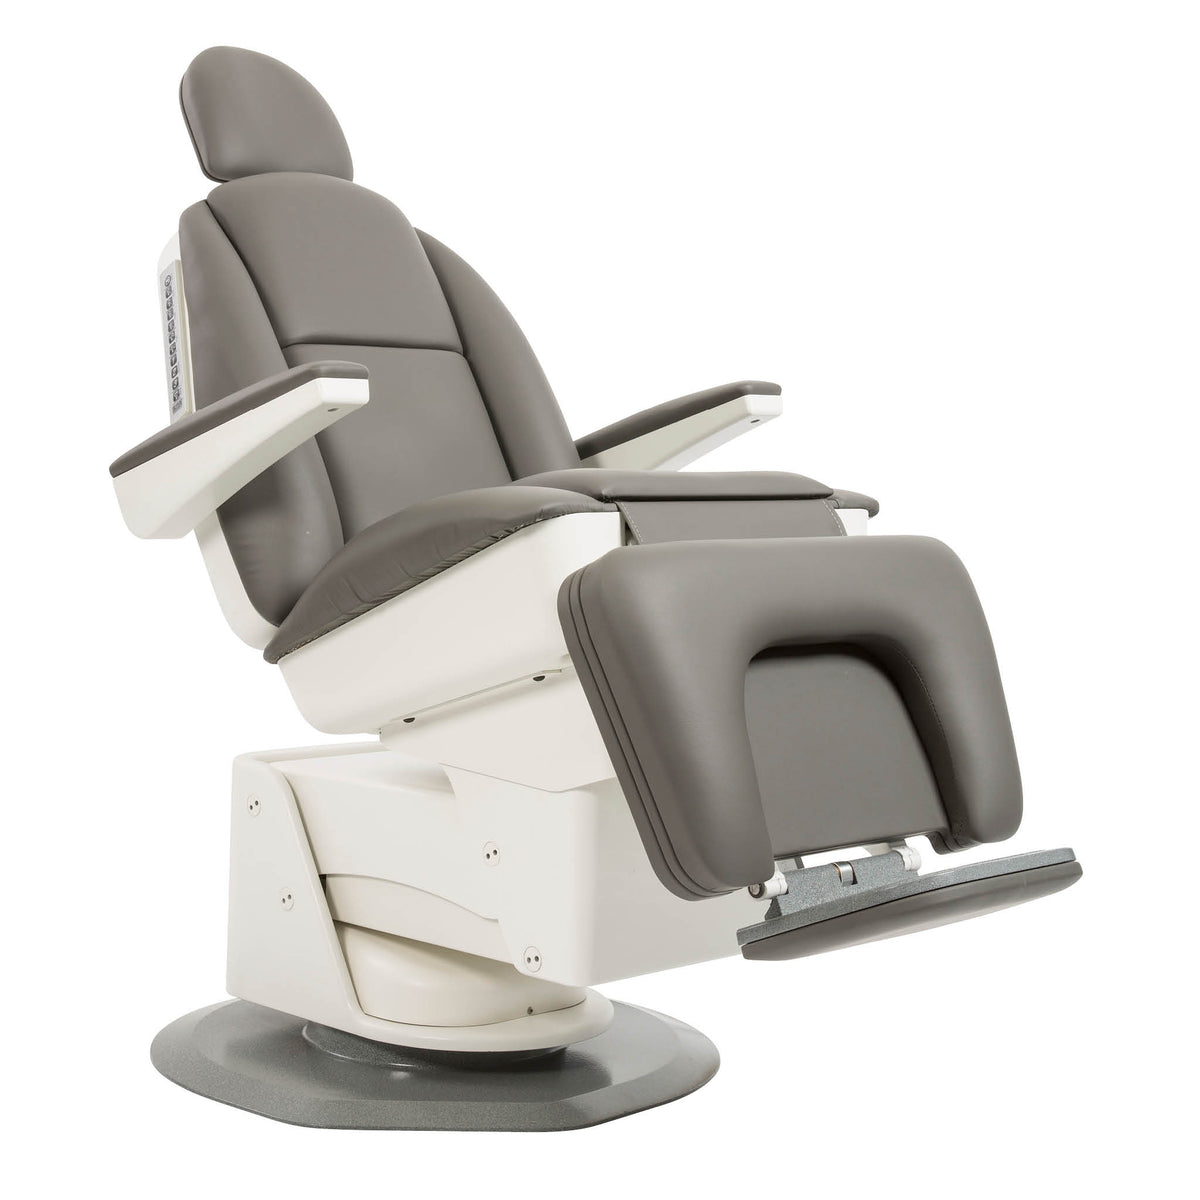 GLOBAL Maxi4500 Patient Chair backward tilt